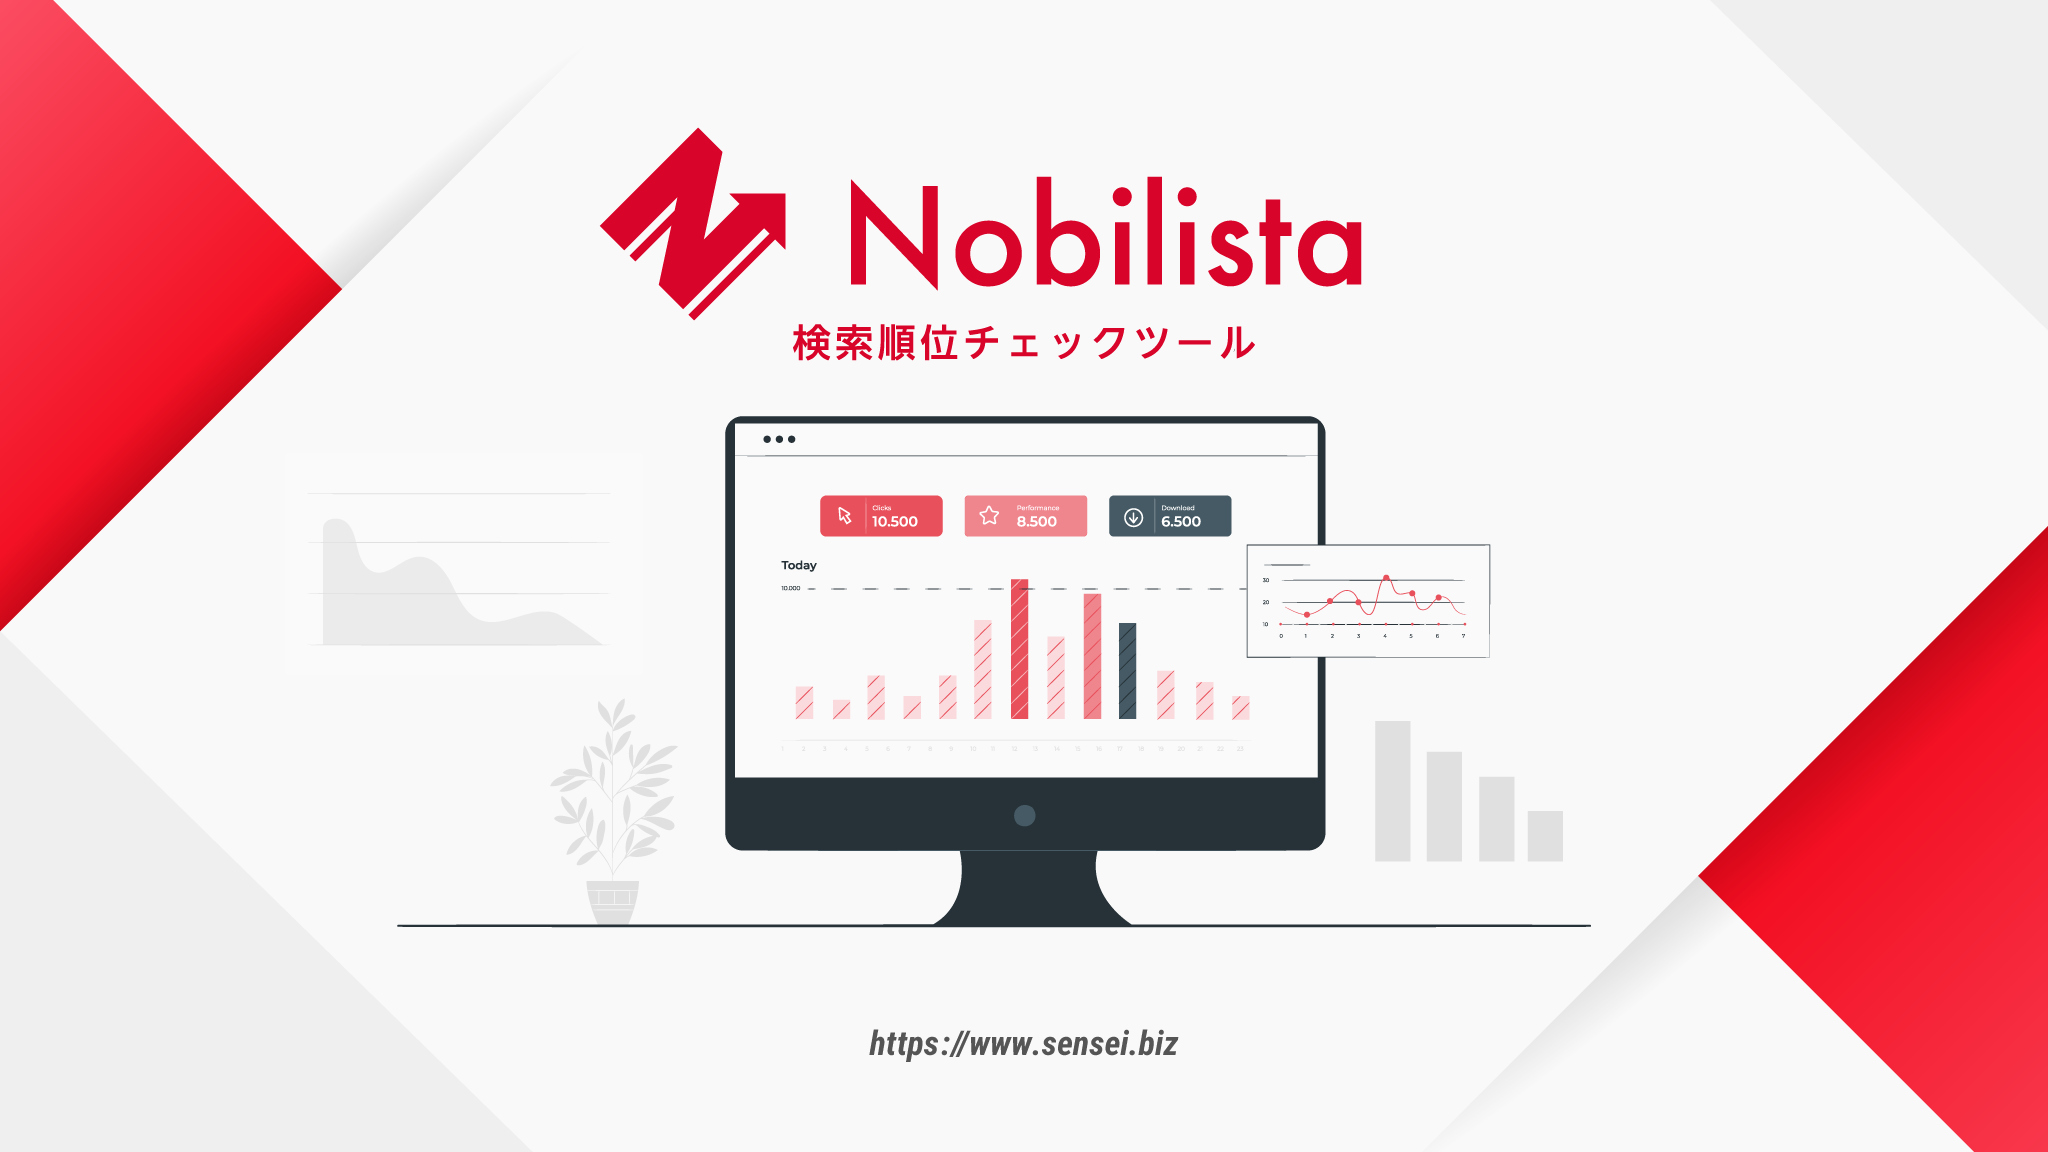 PLP（優先的ランディングページ）対策に必要な検索順位チェックツール「Nobilista（ノビリスタ）」